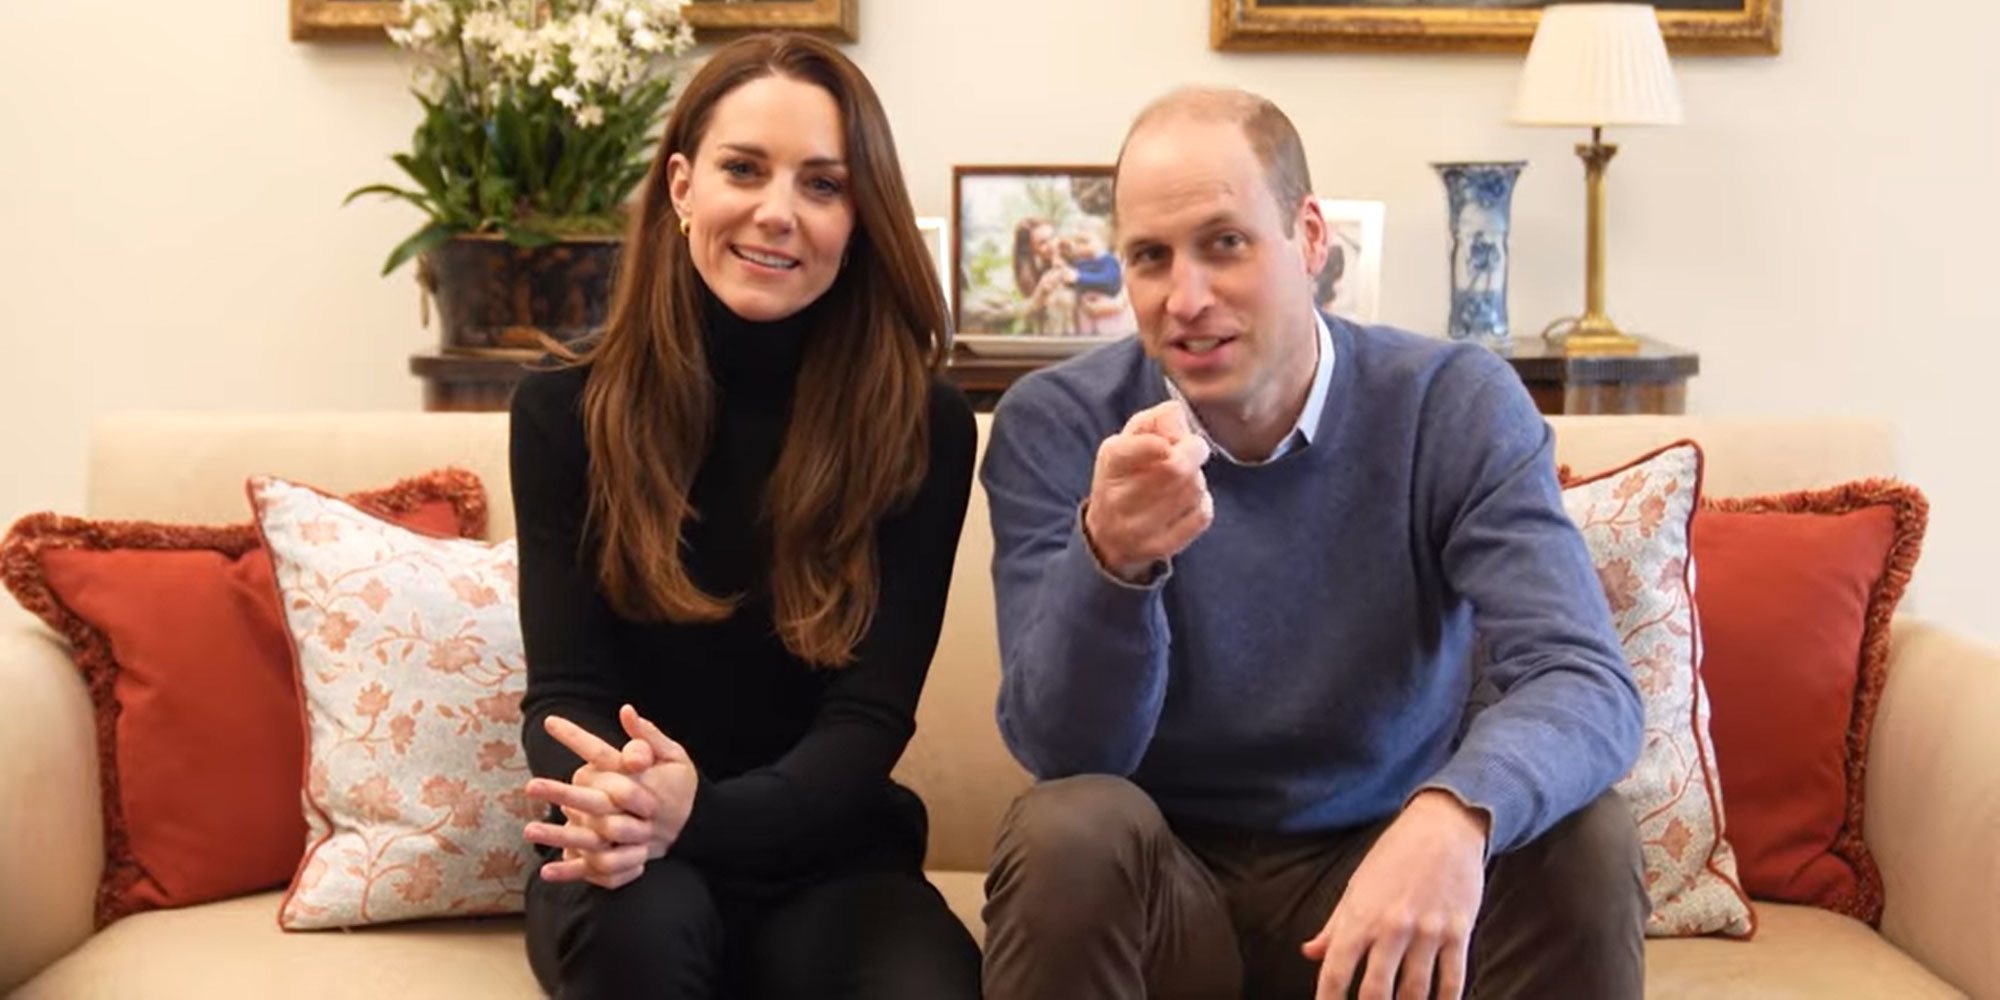 El divertido vídeo del Príncipe Guillermo y Kate Middleton con el que estrenan canal de Youtube: "Más vale tarde que nunca"